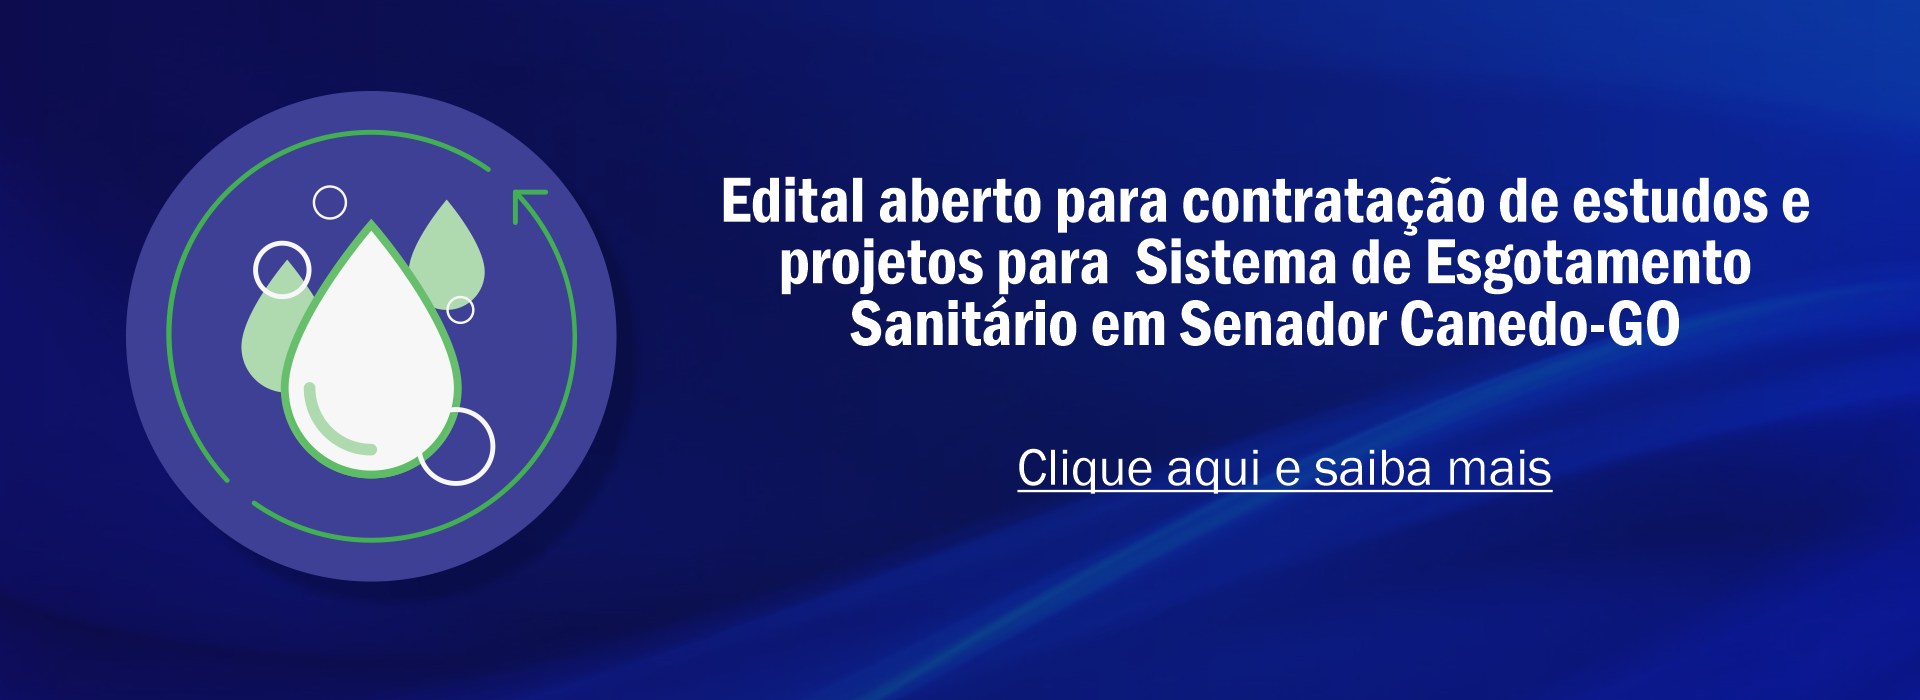 Esgotamento Sanitário Senador Canedo